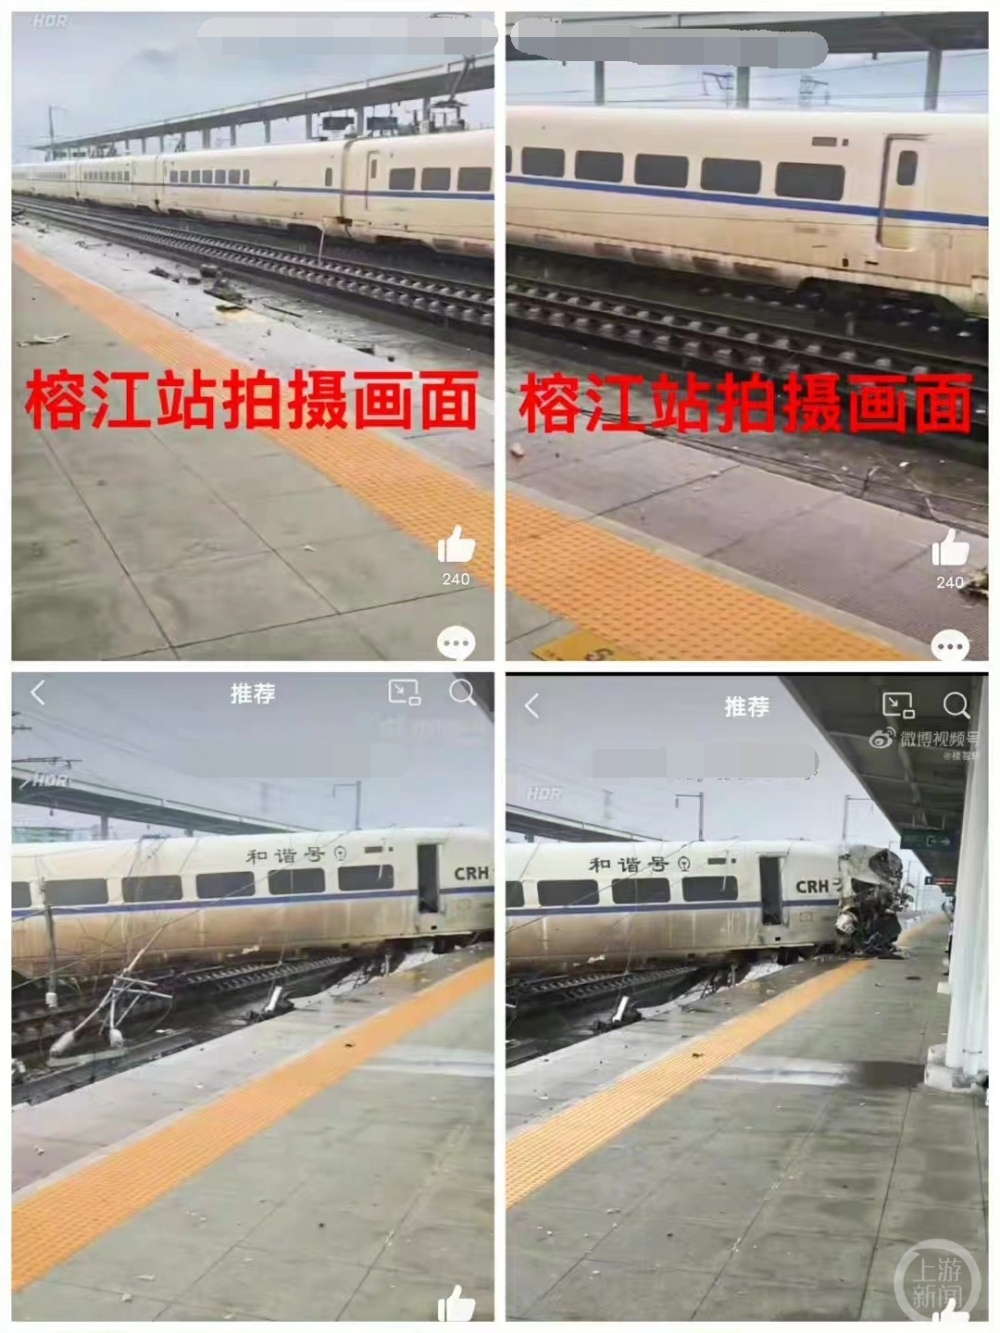 动车D2809在贵州榕江站撞泥石流脱线致车头损毁，司机死亡8人受伤